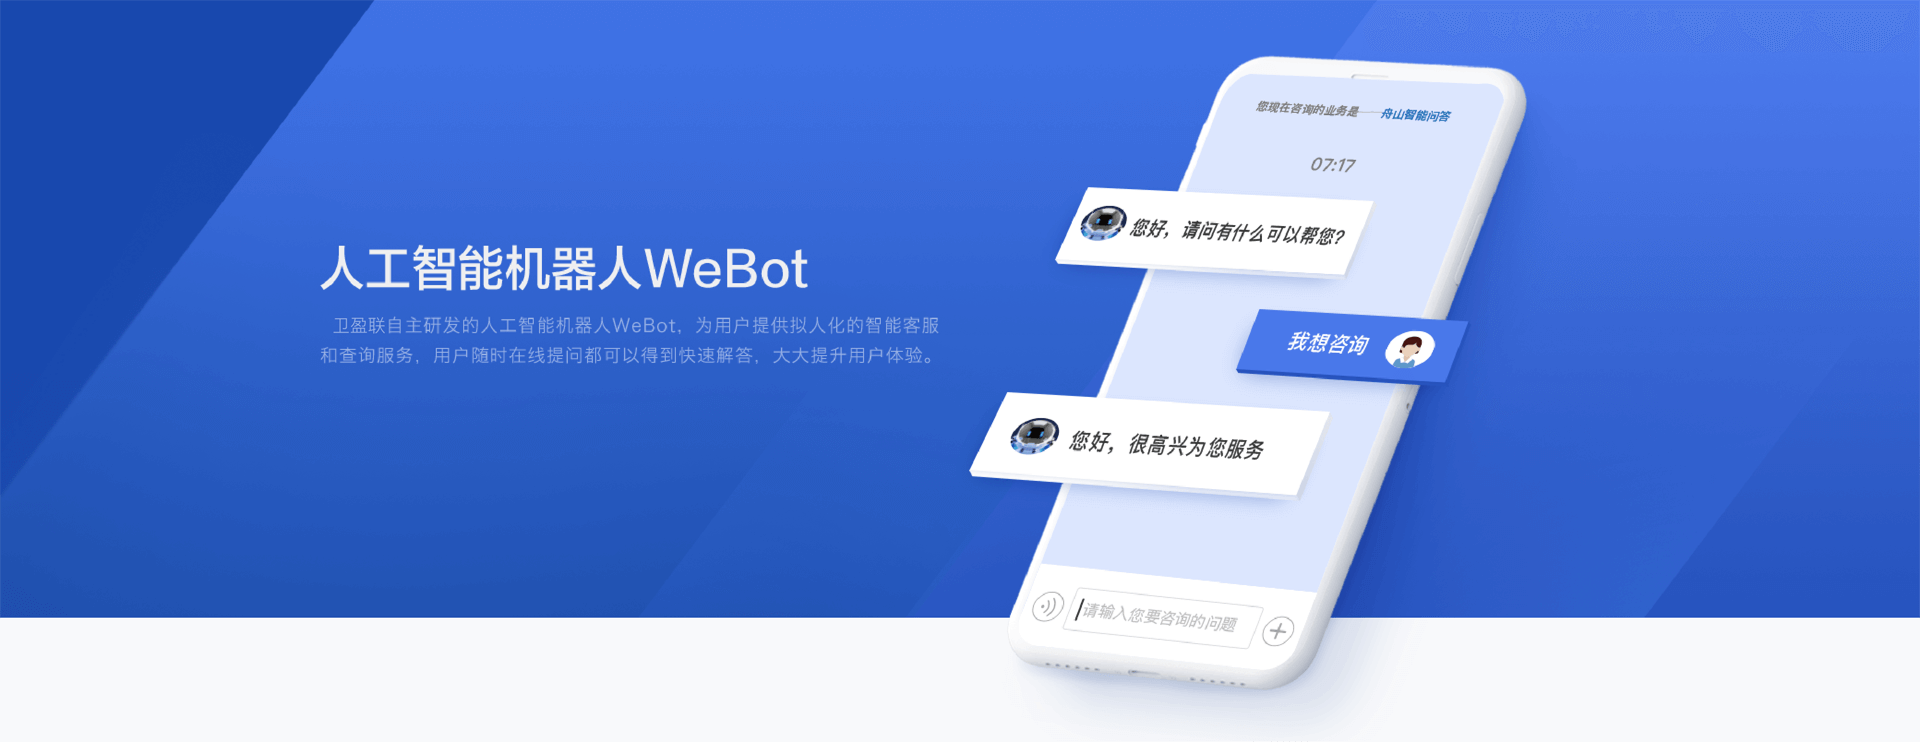 人工智能机器人WeBot